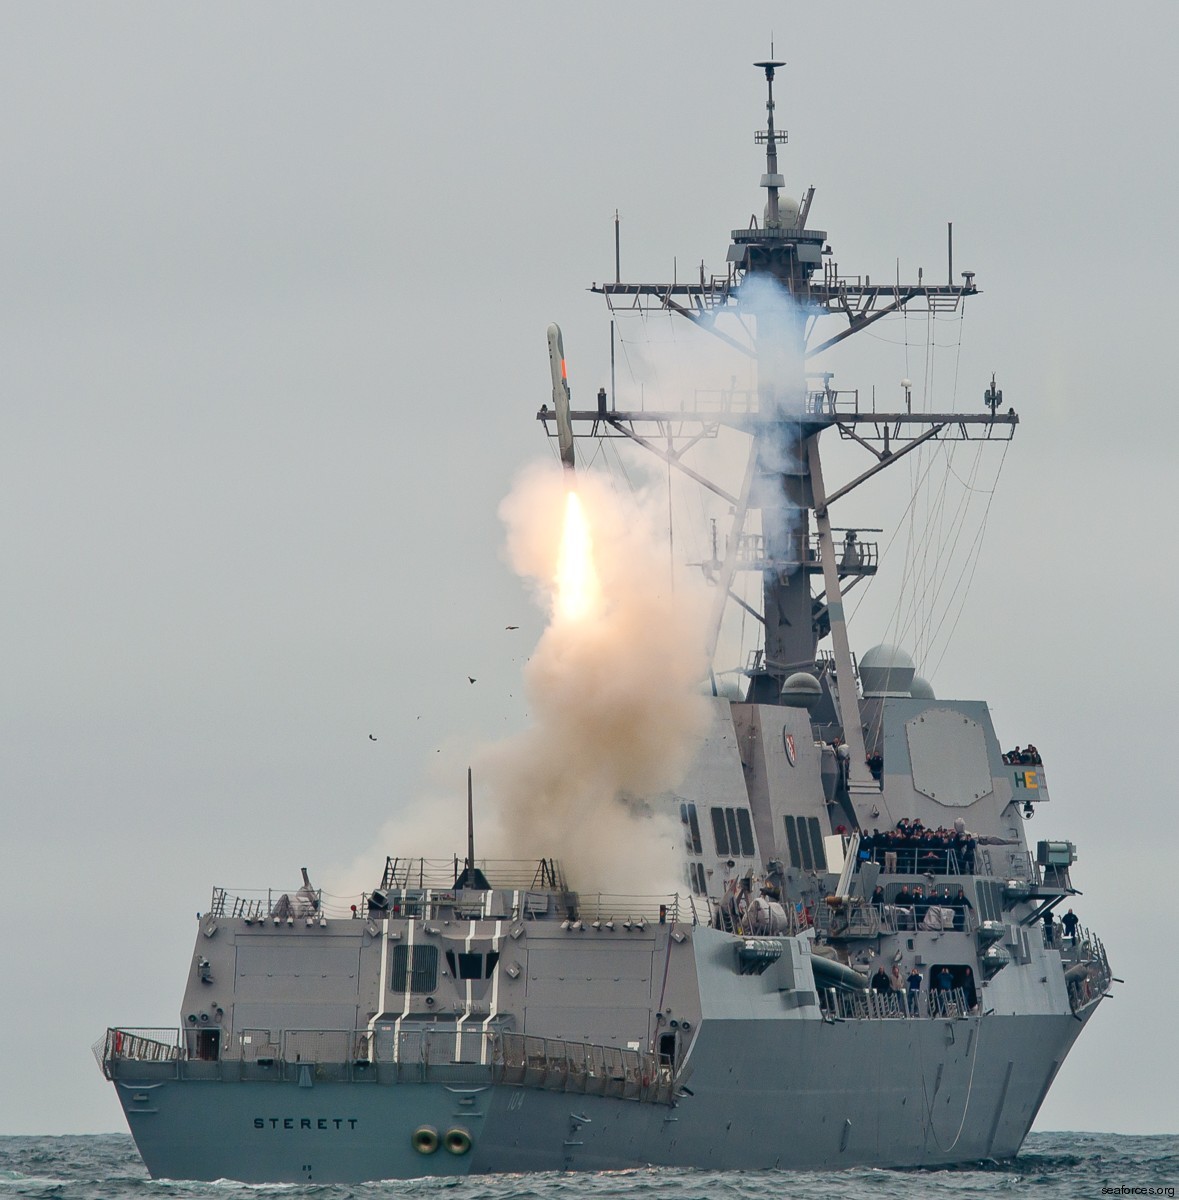 bgm rgm-109 tomahawk land attack missile tlam us navy 14